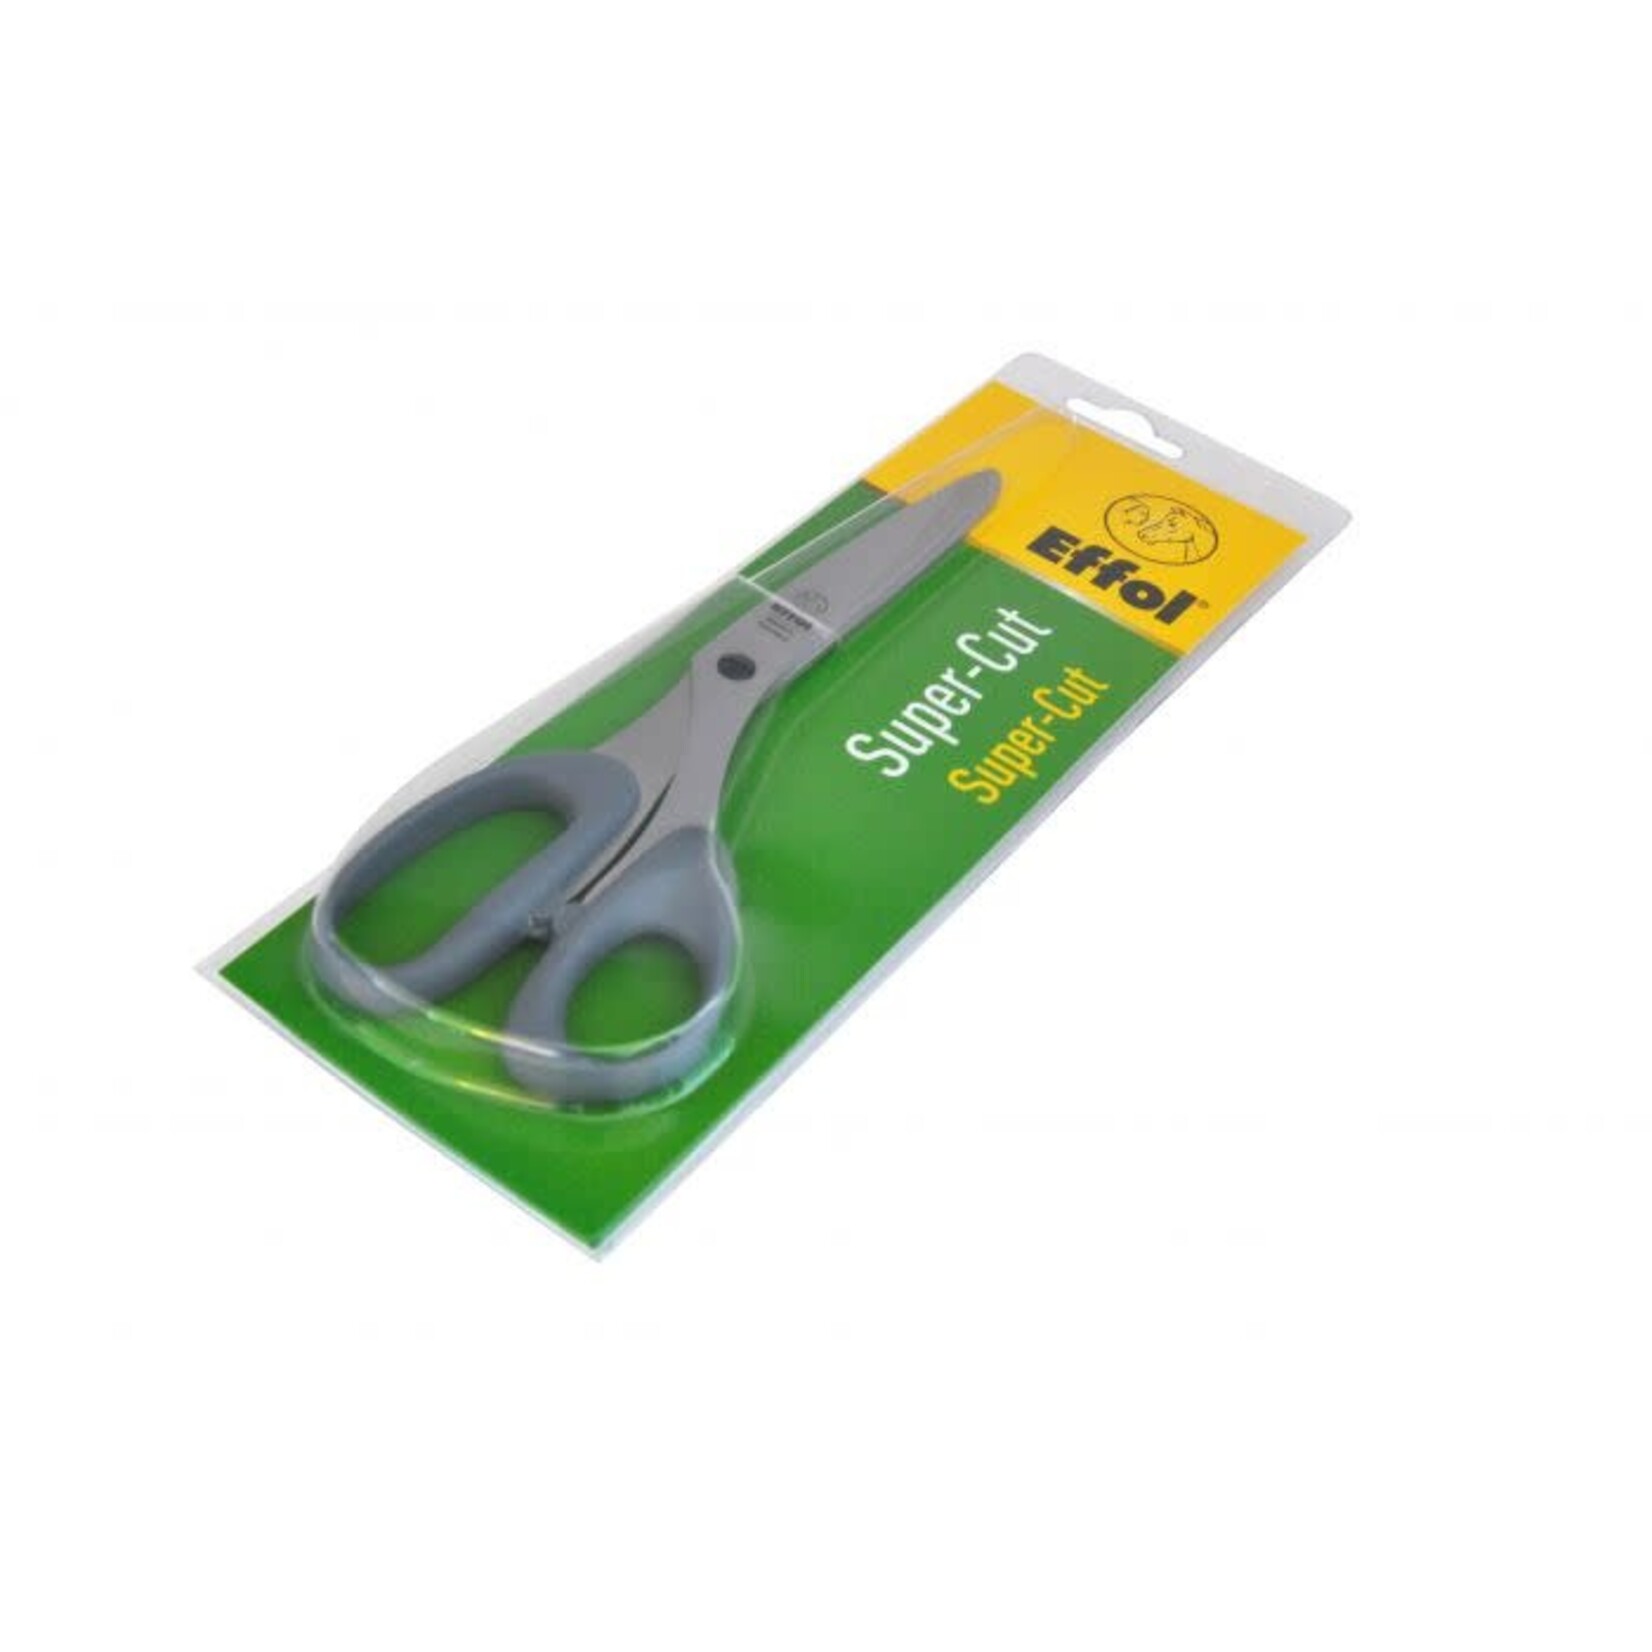 Effol/Effax Effol Super Cut Scissors